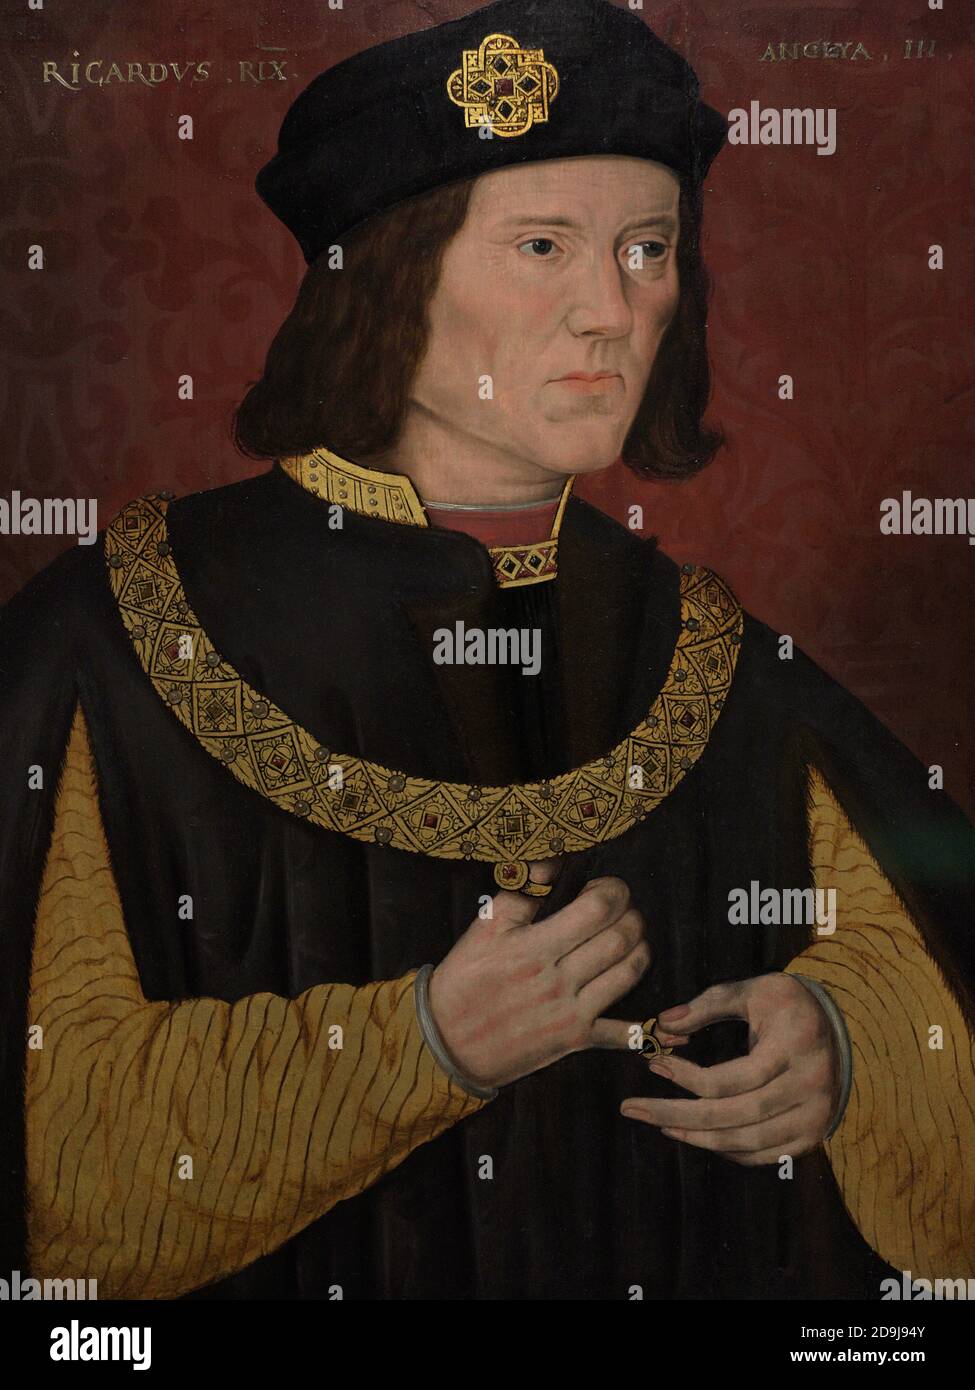 Roi Richard III d'Englod( 1452-1485). Maison de York. Le dernier roi Plantagenet et Yorkiste d'Angleterre. Portrait d'un artiste non identifié. Huile sur panneau, 1597-1618. Galerie nationale de portraits. Londres, Angleterre, Royaume-Uni. Banque D'Images